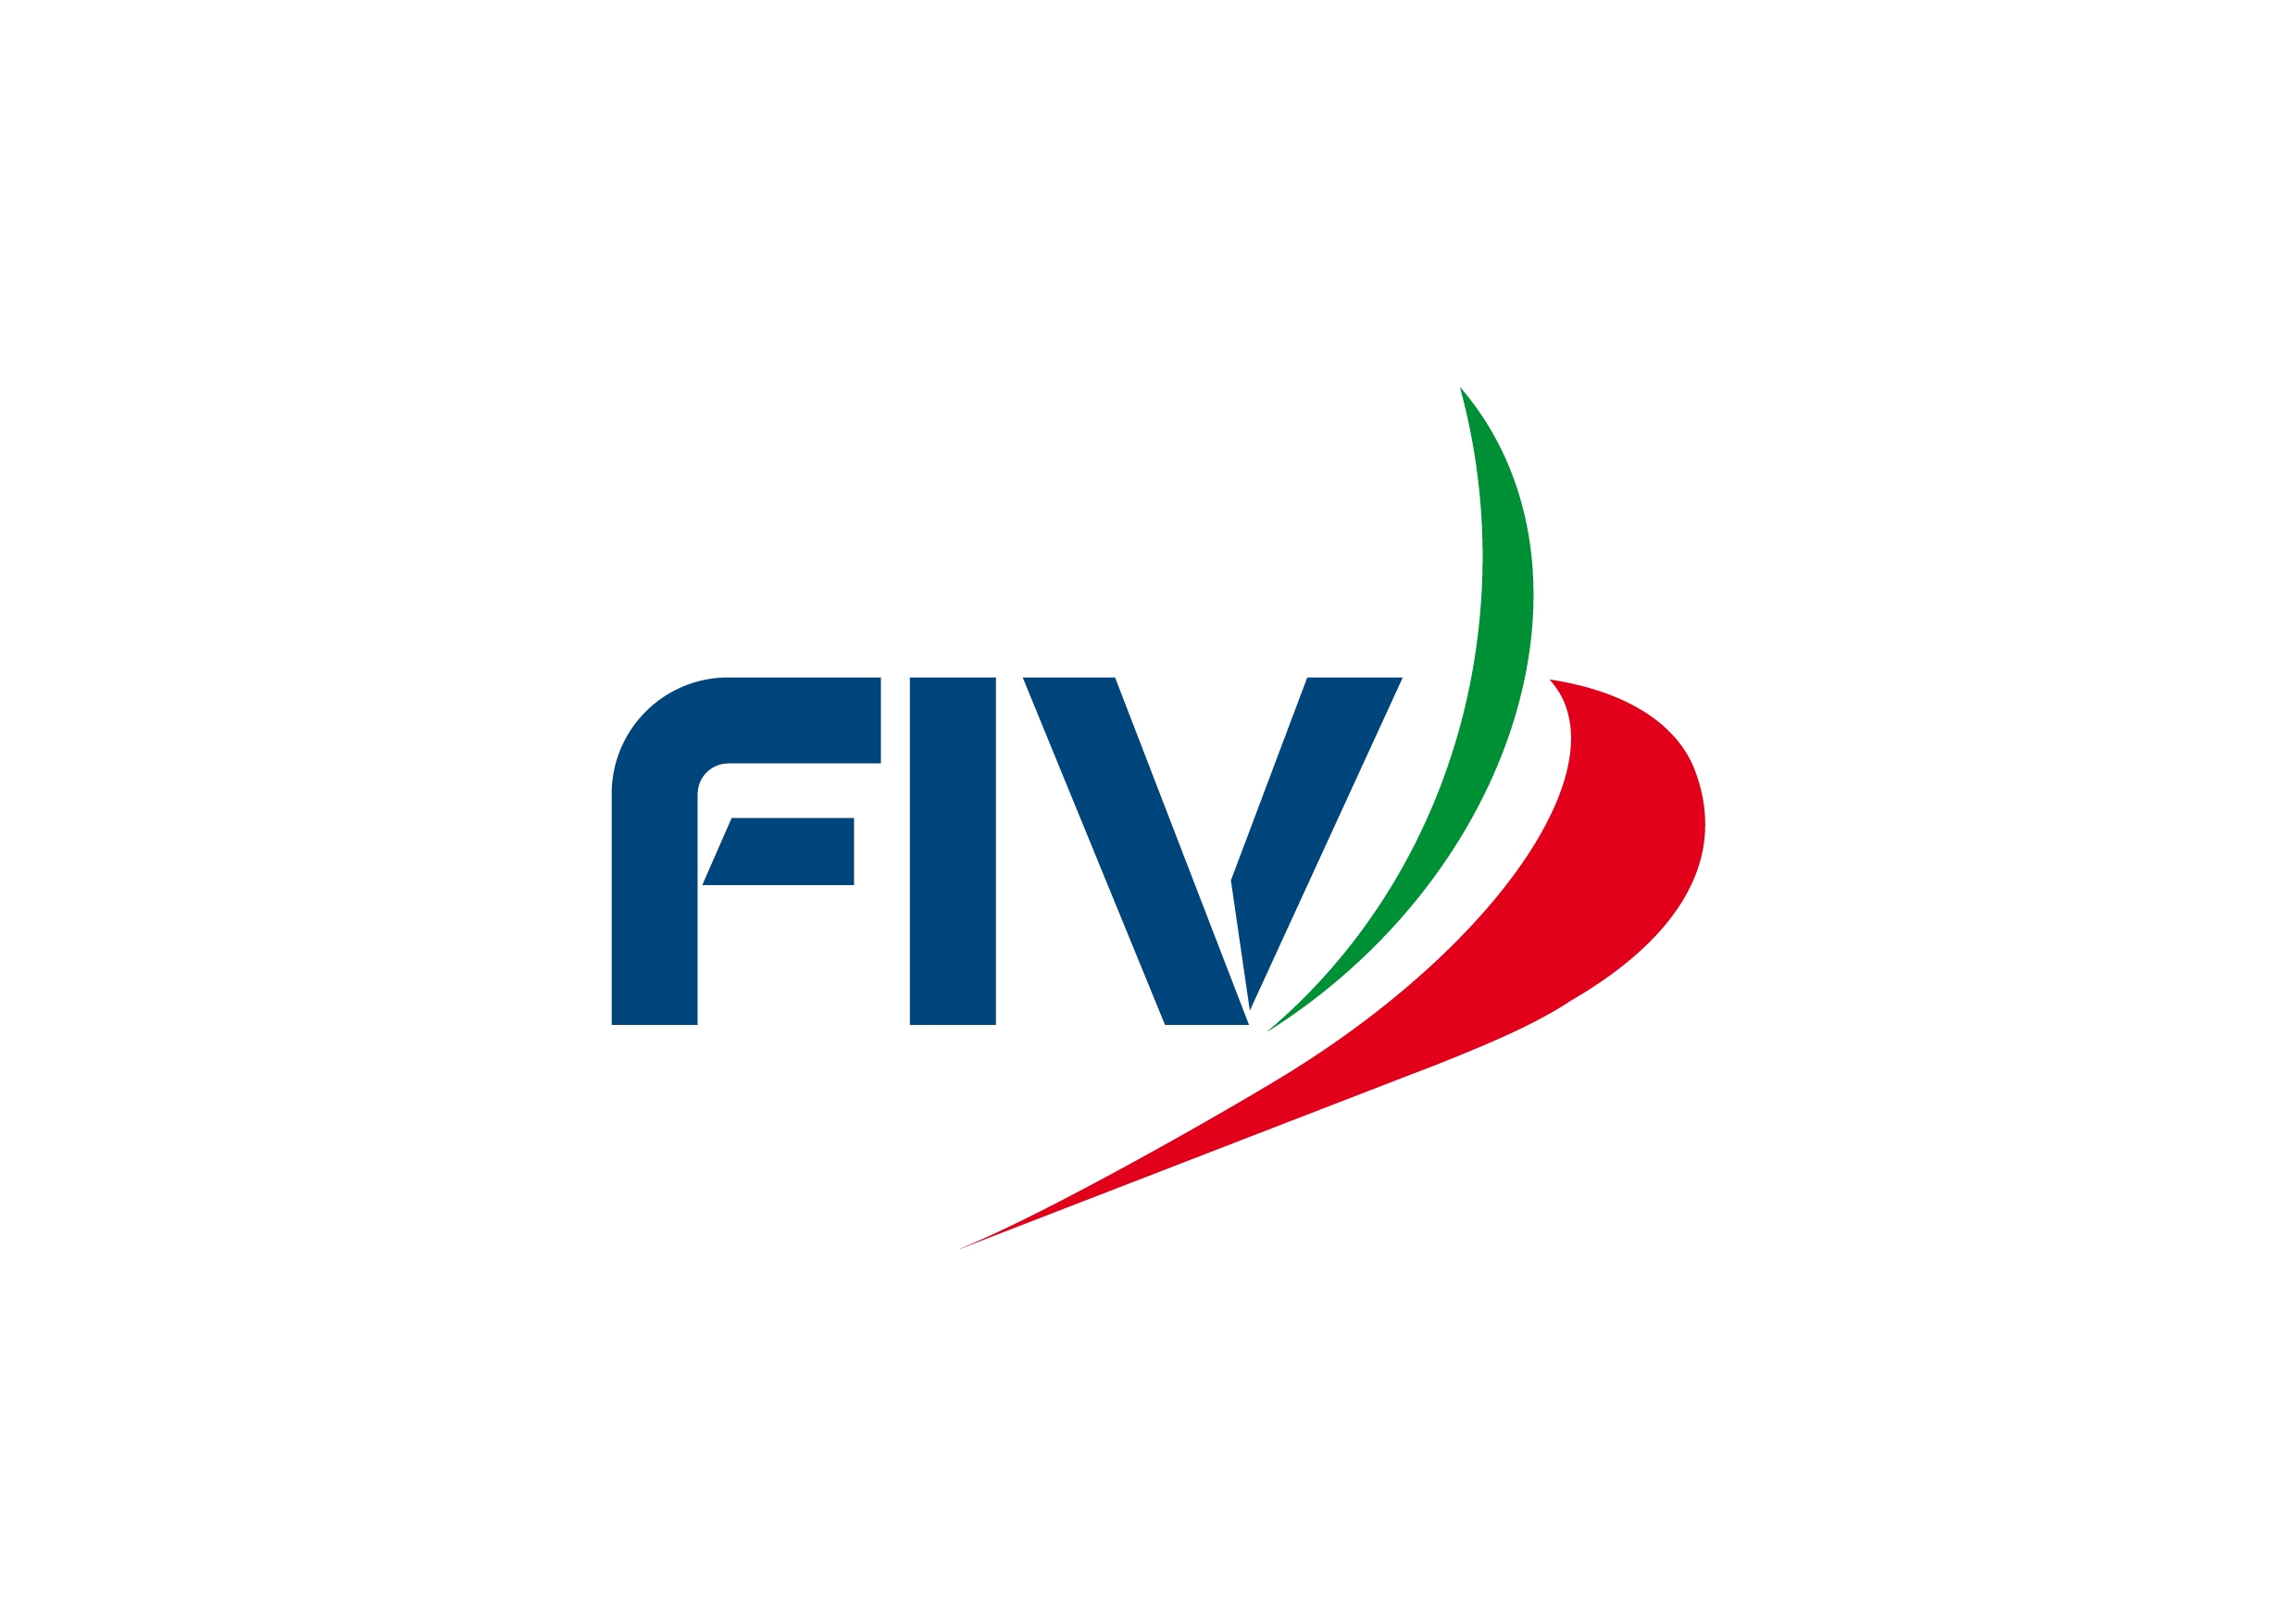 images/fiv/fiv_logo_12.jpg